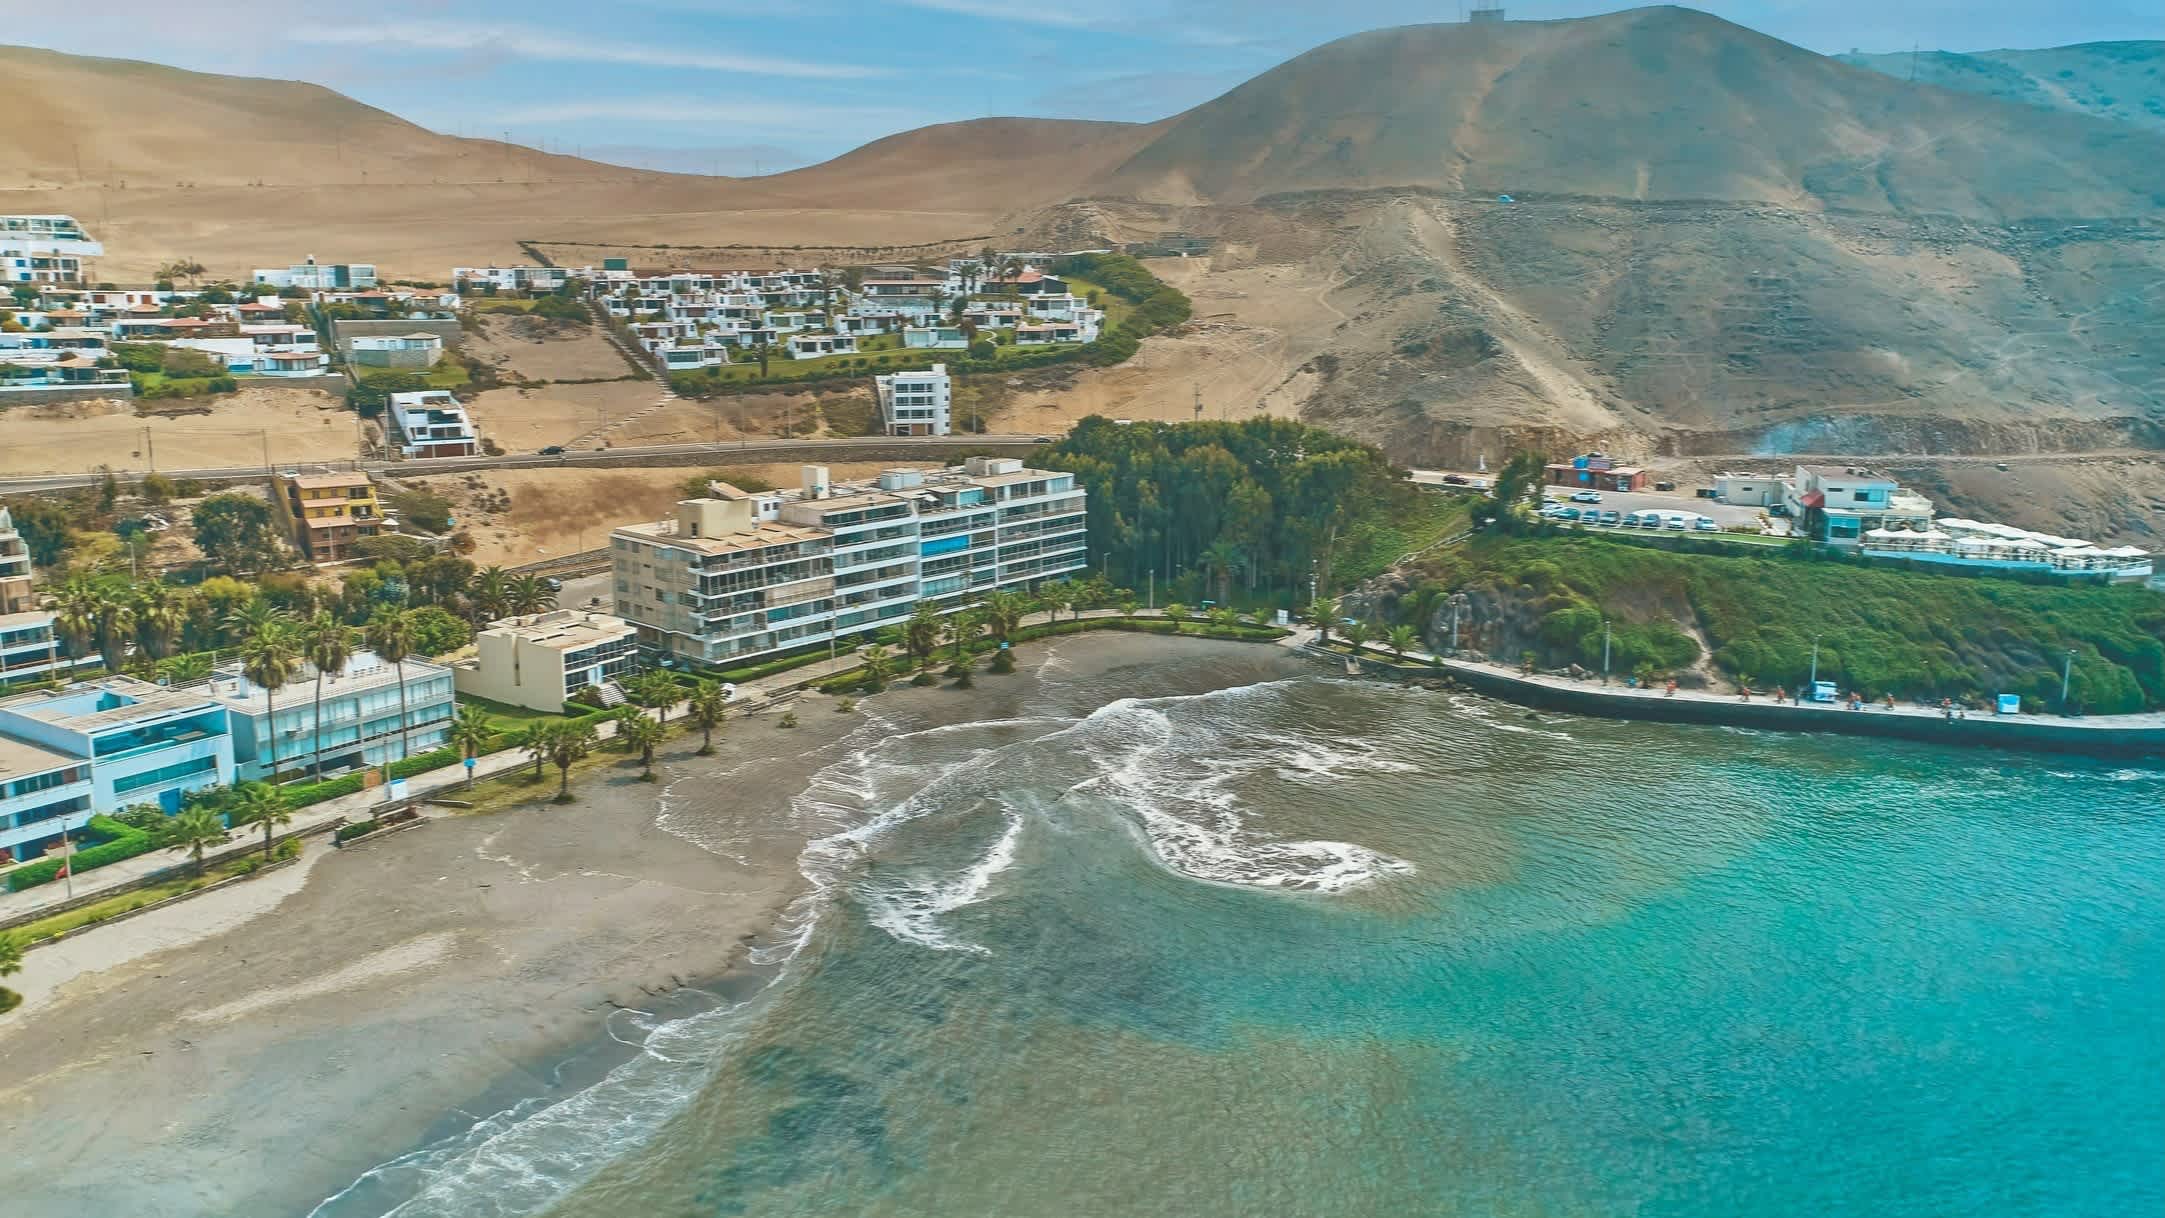 Drohnenaufnahme von der Bucht Ancon, Peru bei sonnigem Wetter und mit Blick auf das blaue Meer und Hotels an der Promenade.